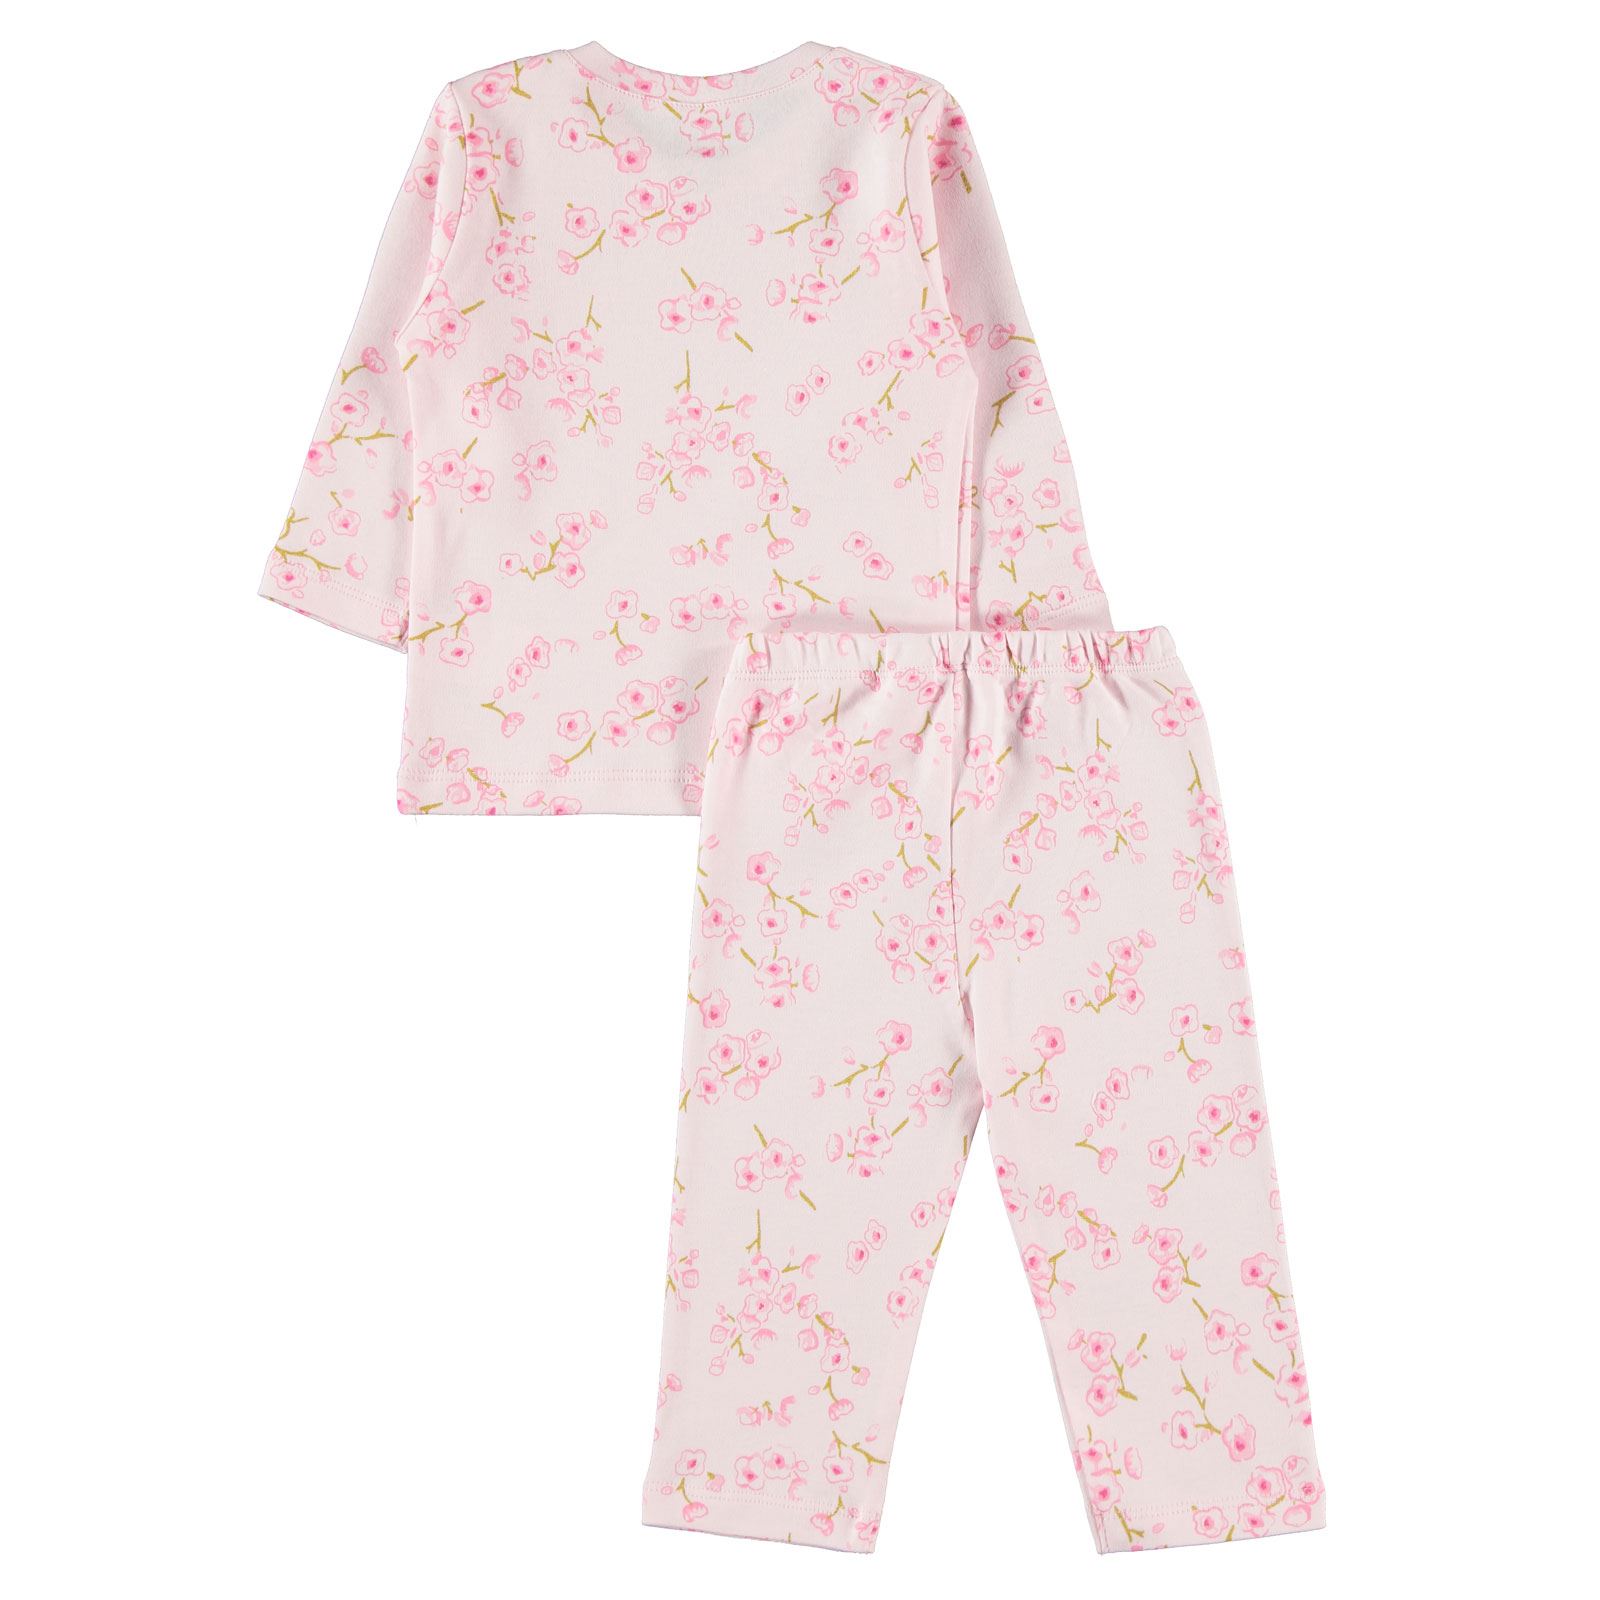 Kujju Kız Bebek Pijama Takımı 6-18 Ay Pembe